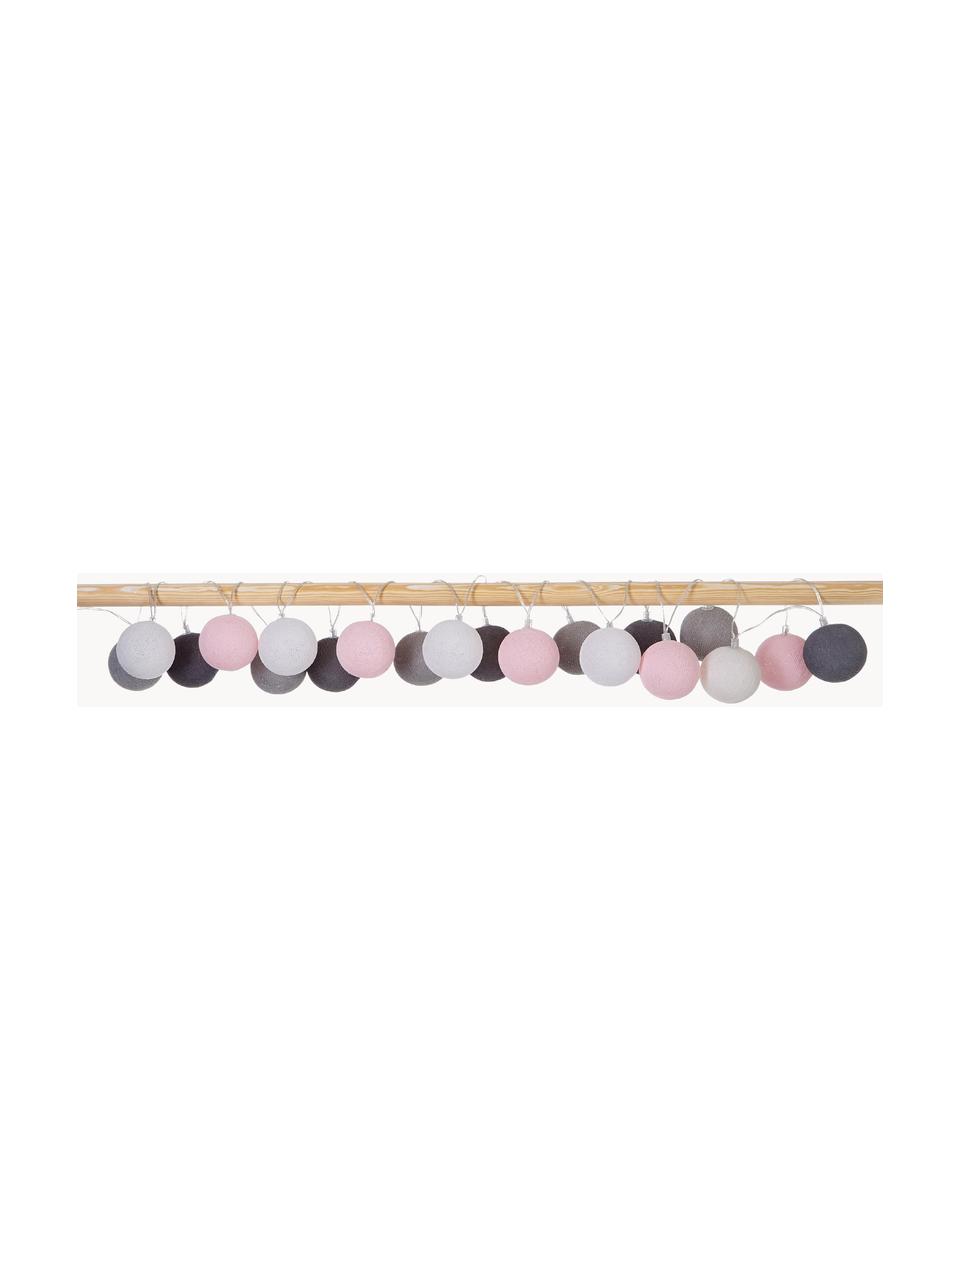 Ghirlanda a LED Colorain, 378 cm, Rosa, tonalità grigie, Lung. 378 cm